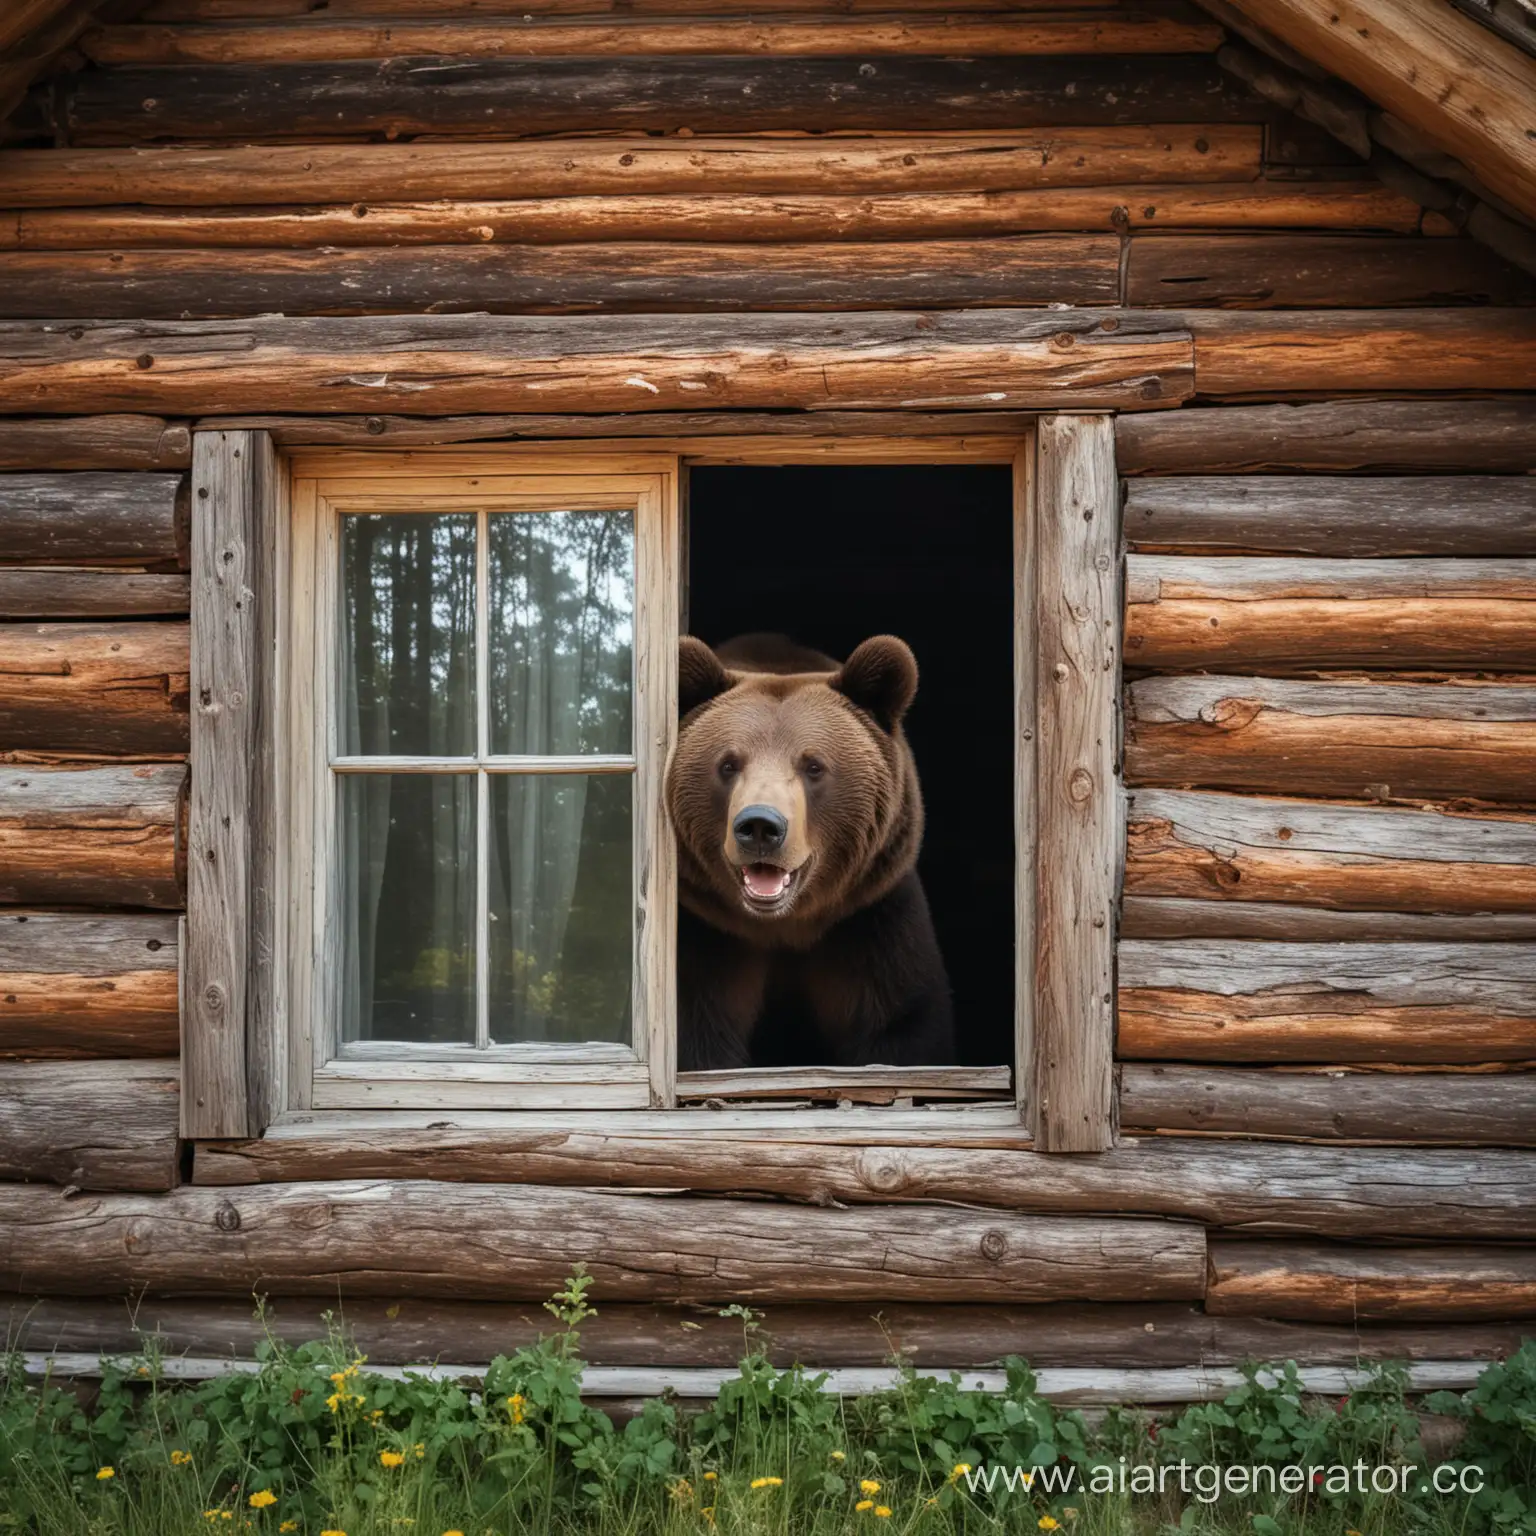 Joyful-Bear-Peeking-from-Old-Russian-Log-Cabin-in-Forest